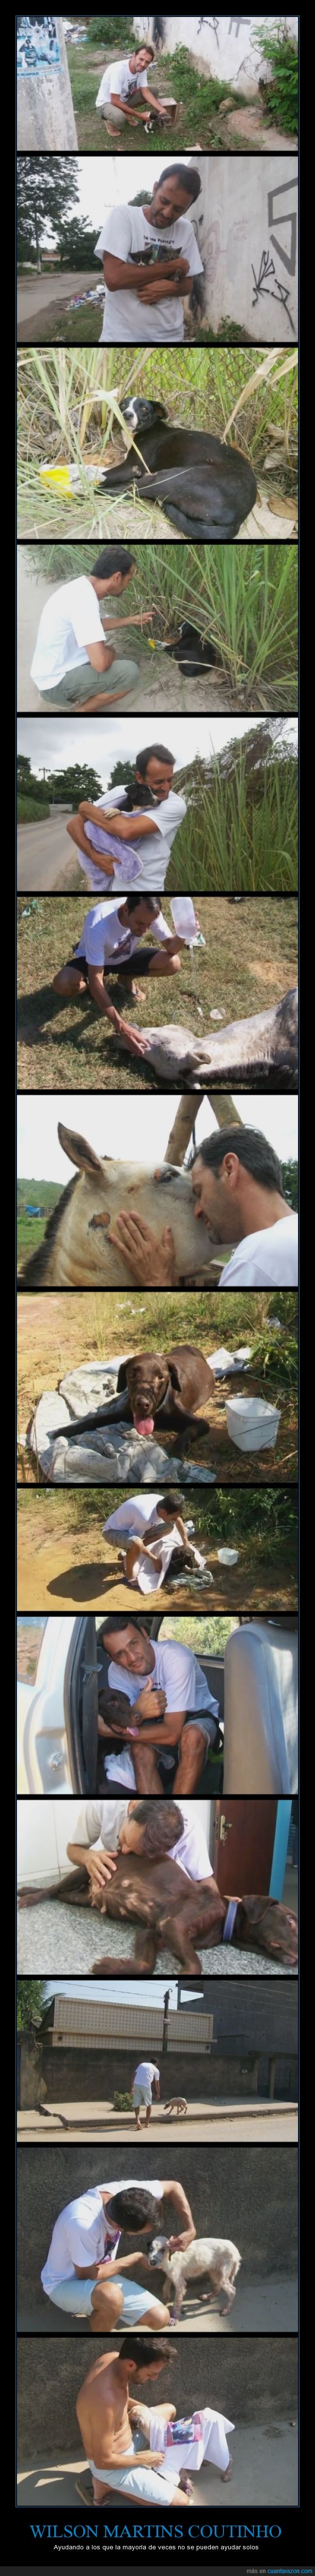 Wilson Martin,salvador,animales,abandonados,maltratados,muy graves,rescatar,ayuda,desinteresado,los cura,vida,perro